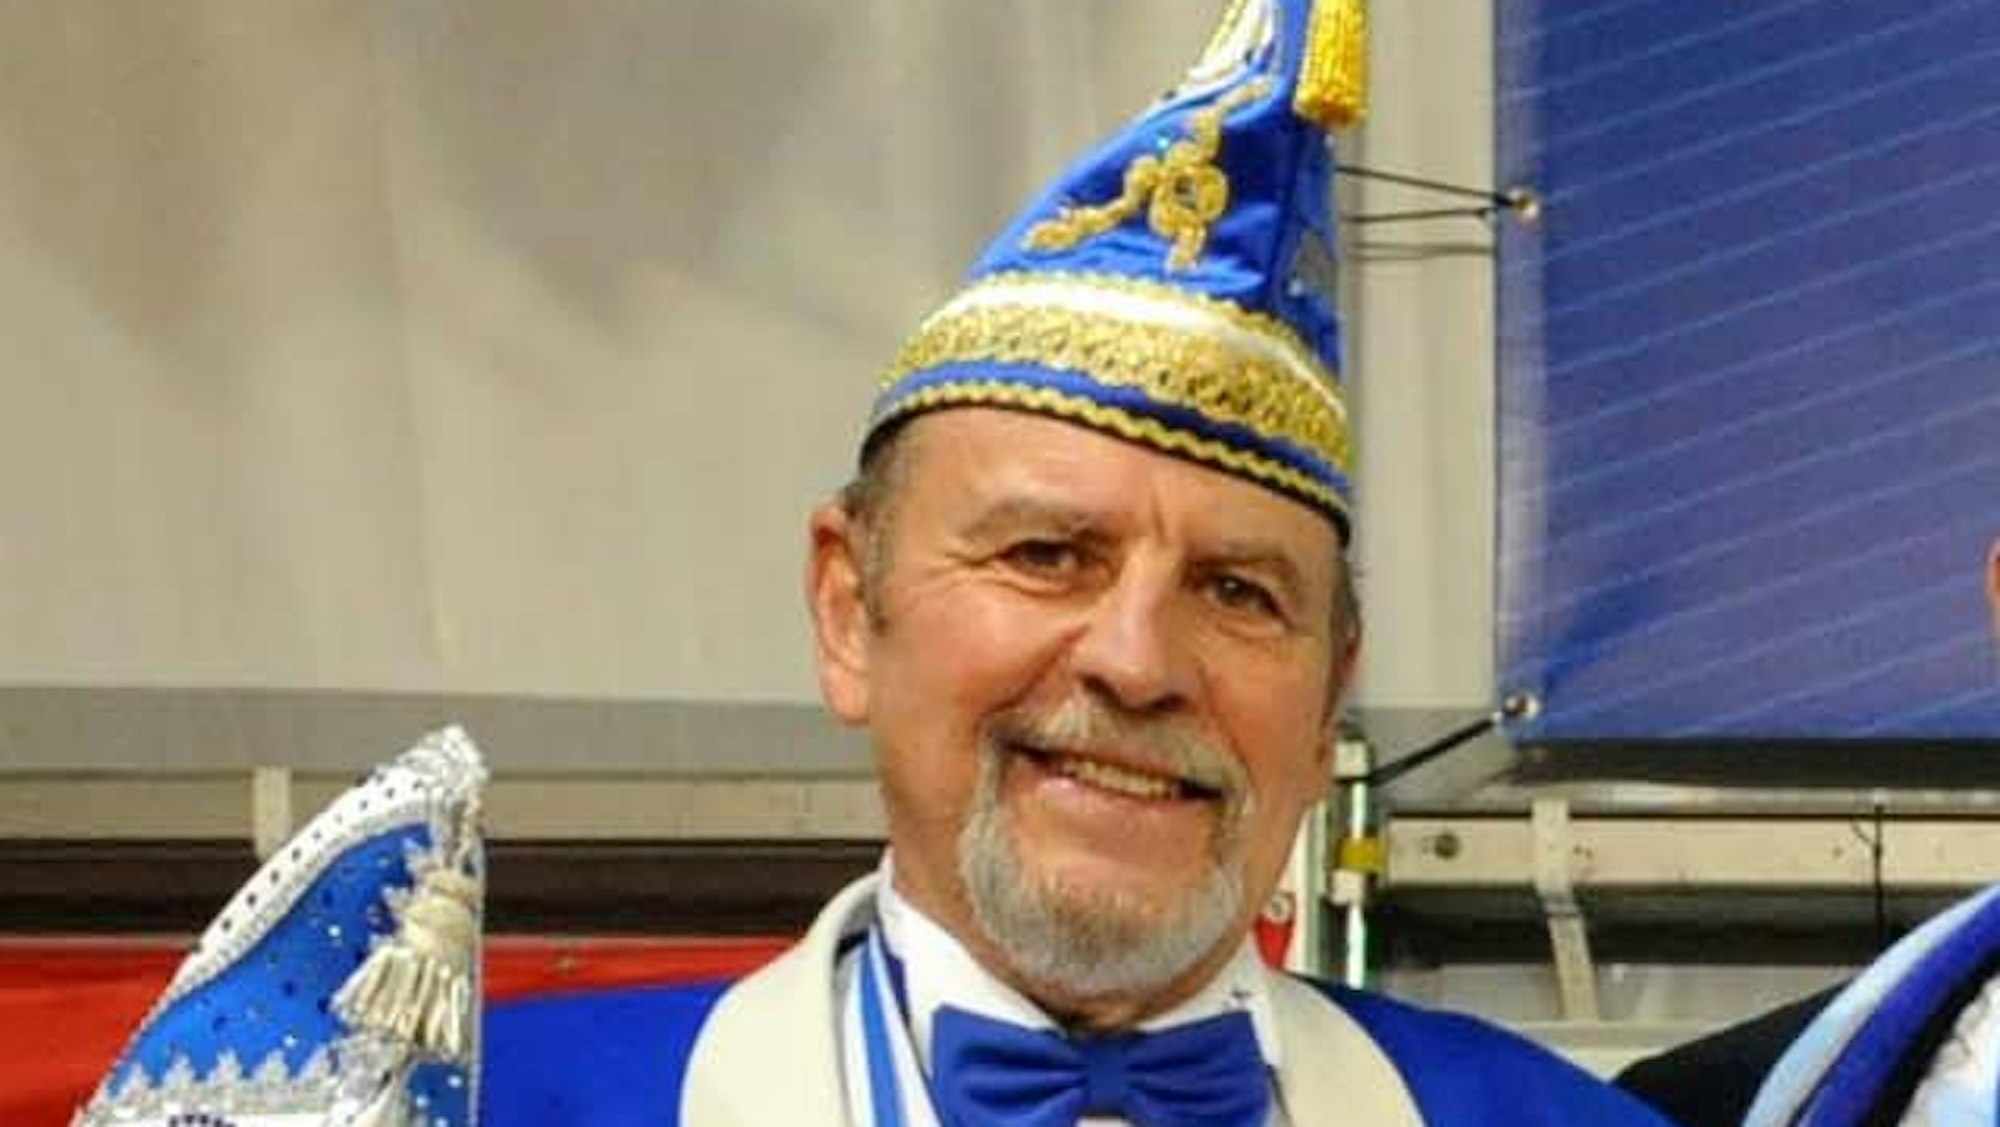 Werner Fuchs, Präsident der Vereinigung Leichlinger Karneval, mit Kappe auf der Bühne.